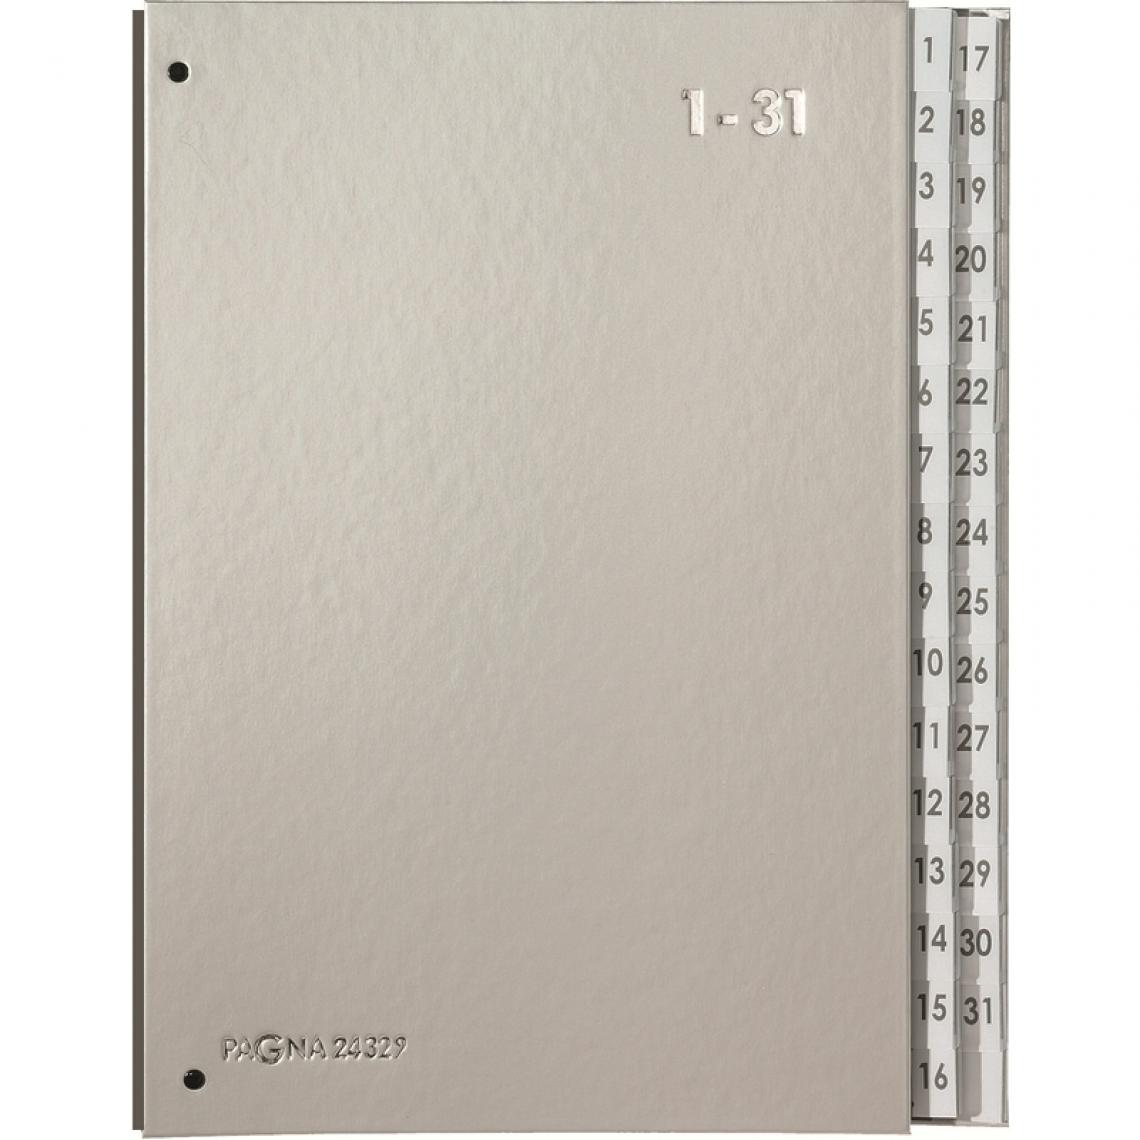 PAGNA - PAGNA Trieur Color, format A4, 1 - 31, 31 compartiments () - Accessoires Bureau